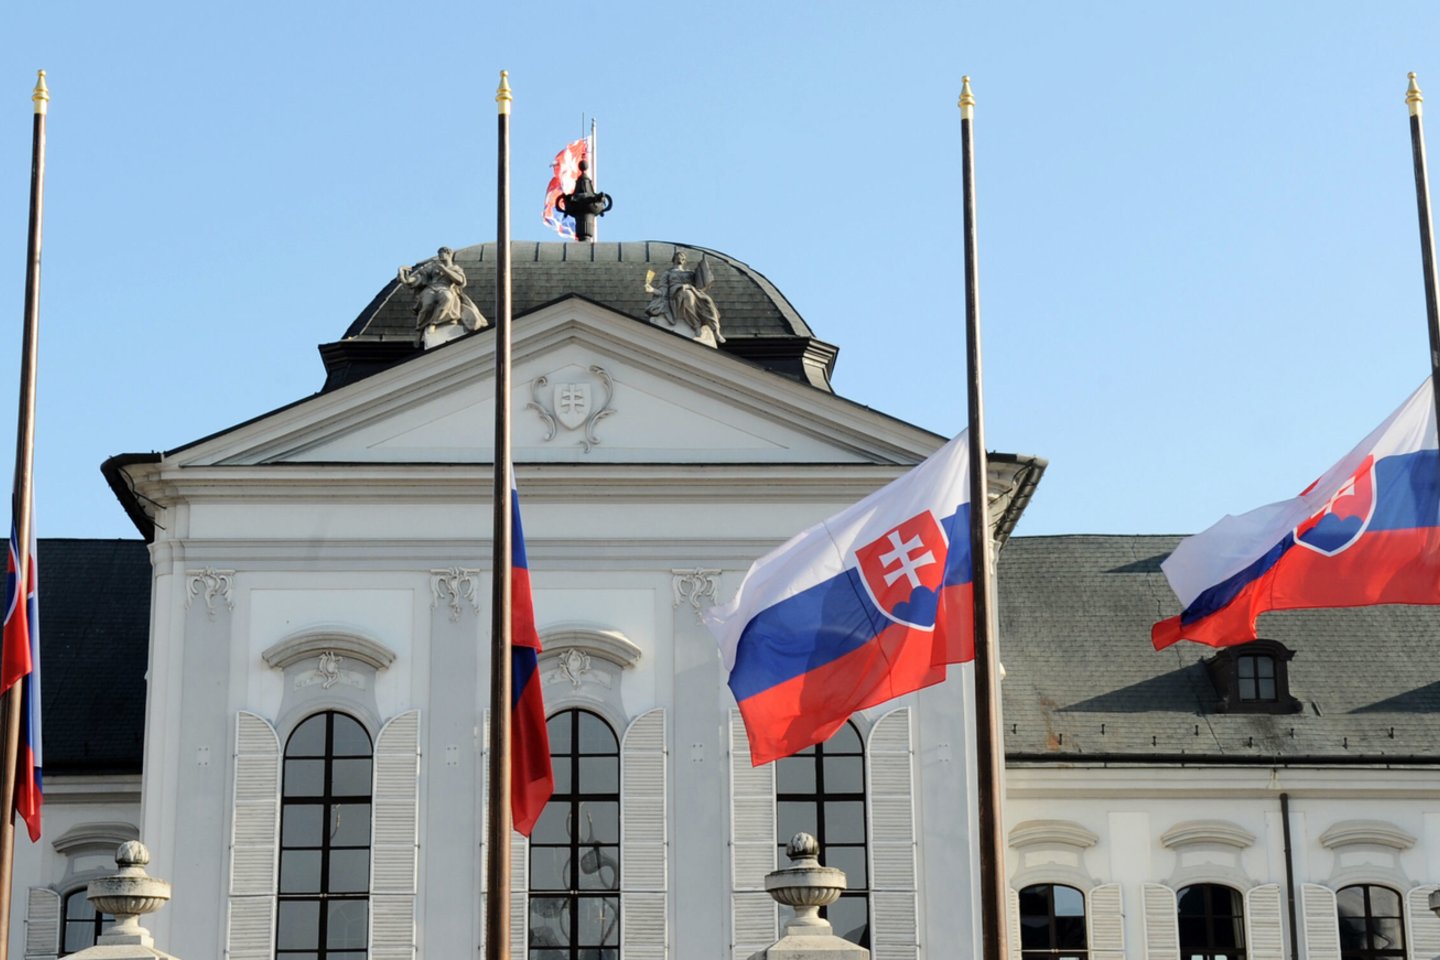  Slovakijos aplinkos ministras Laszlo Solymosas ketvirtadienį paskelbė apie savo atsistatydinimą. Šio netikėto žingsnio priežastis, anot žiniasklaidos, yra muštynės, į kurias 51-erių neblaivus politikas įsitraukė išvakarėse.  <br> AFP/Scanpix nuotr.